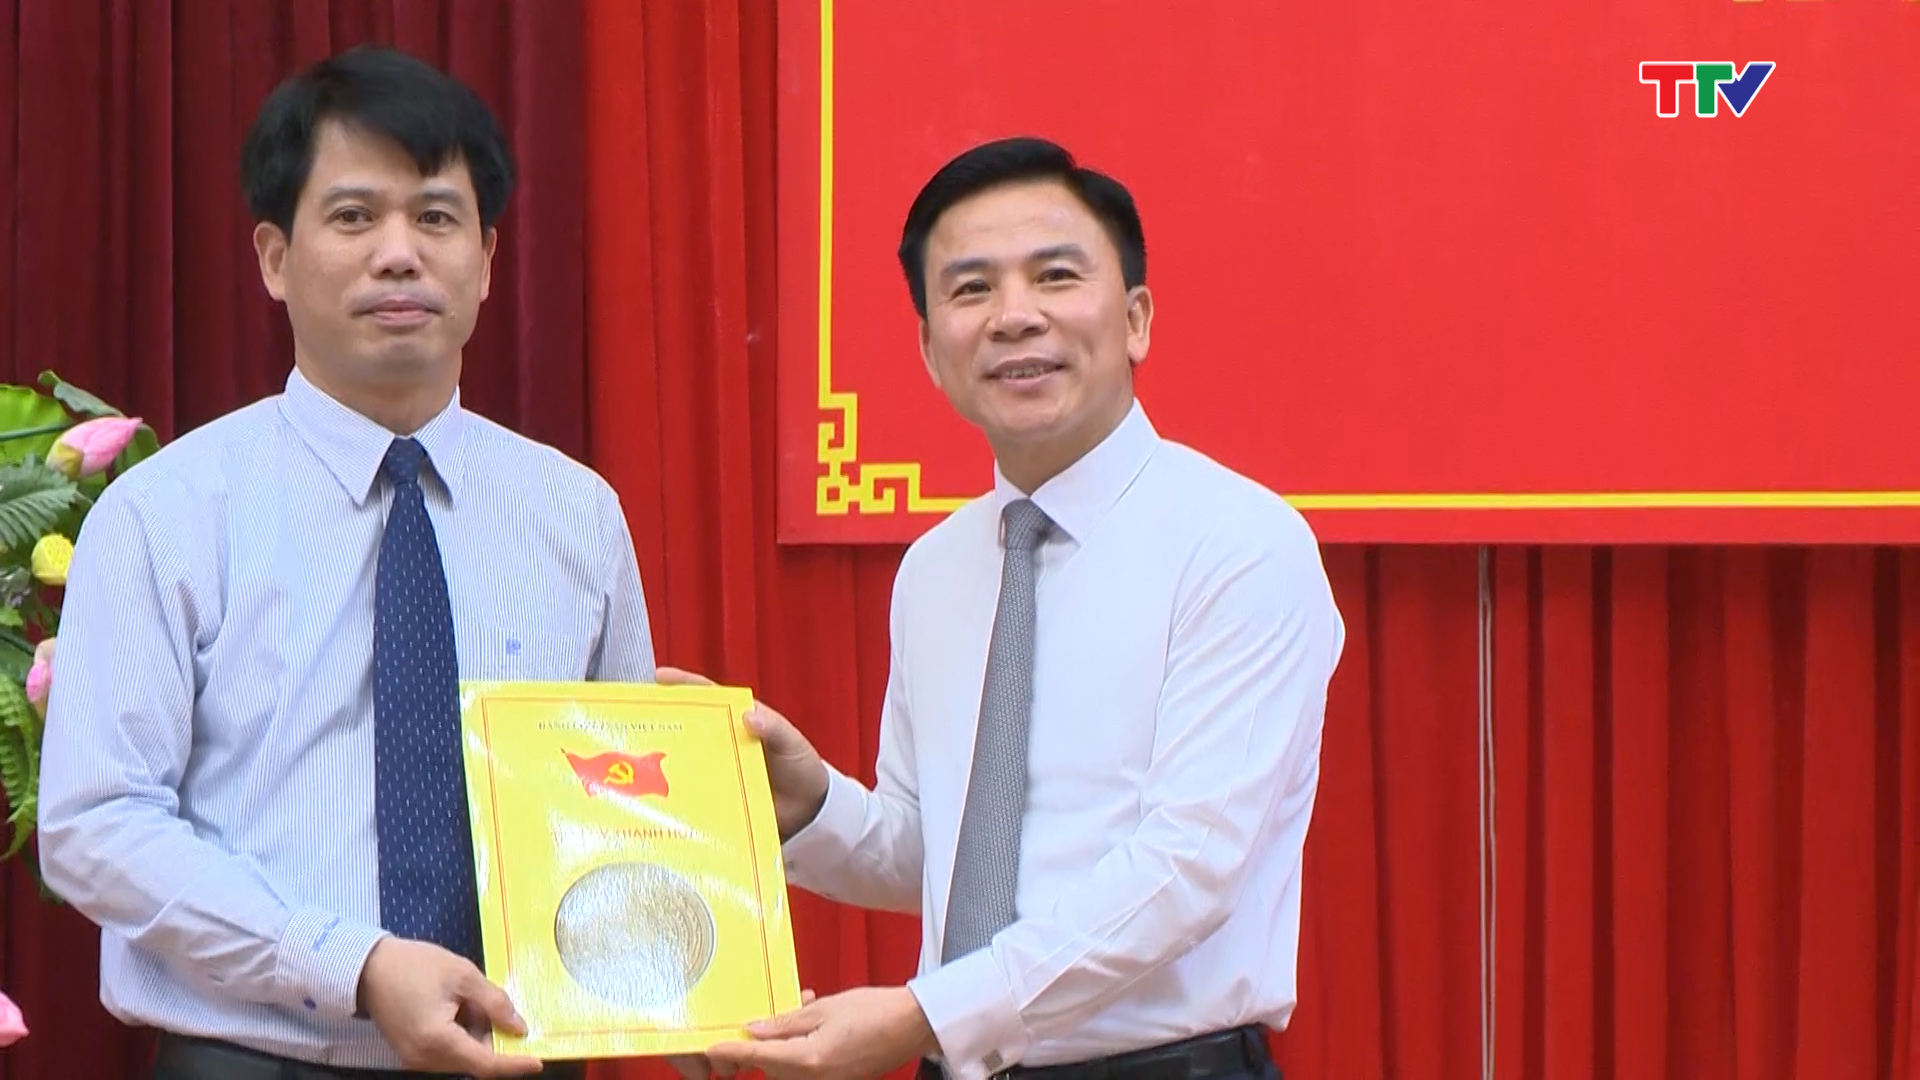 Đồng chí Đào Xuân Yên, Tỉnh ủy viên, thôi giữ chức Bí thư Huyện ủy Hà Trung nhiệm kỳ 2015 - 2020, đến nhận nhiệm vụ tại Văn phòng Tỉnh ủy, bổ nhiệm giữ chức vụ Chánh Văn phòng Tỉnh ủy.